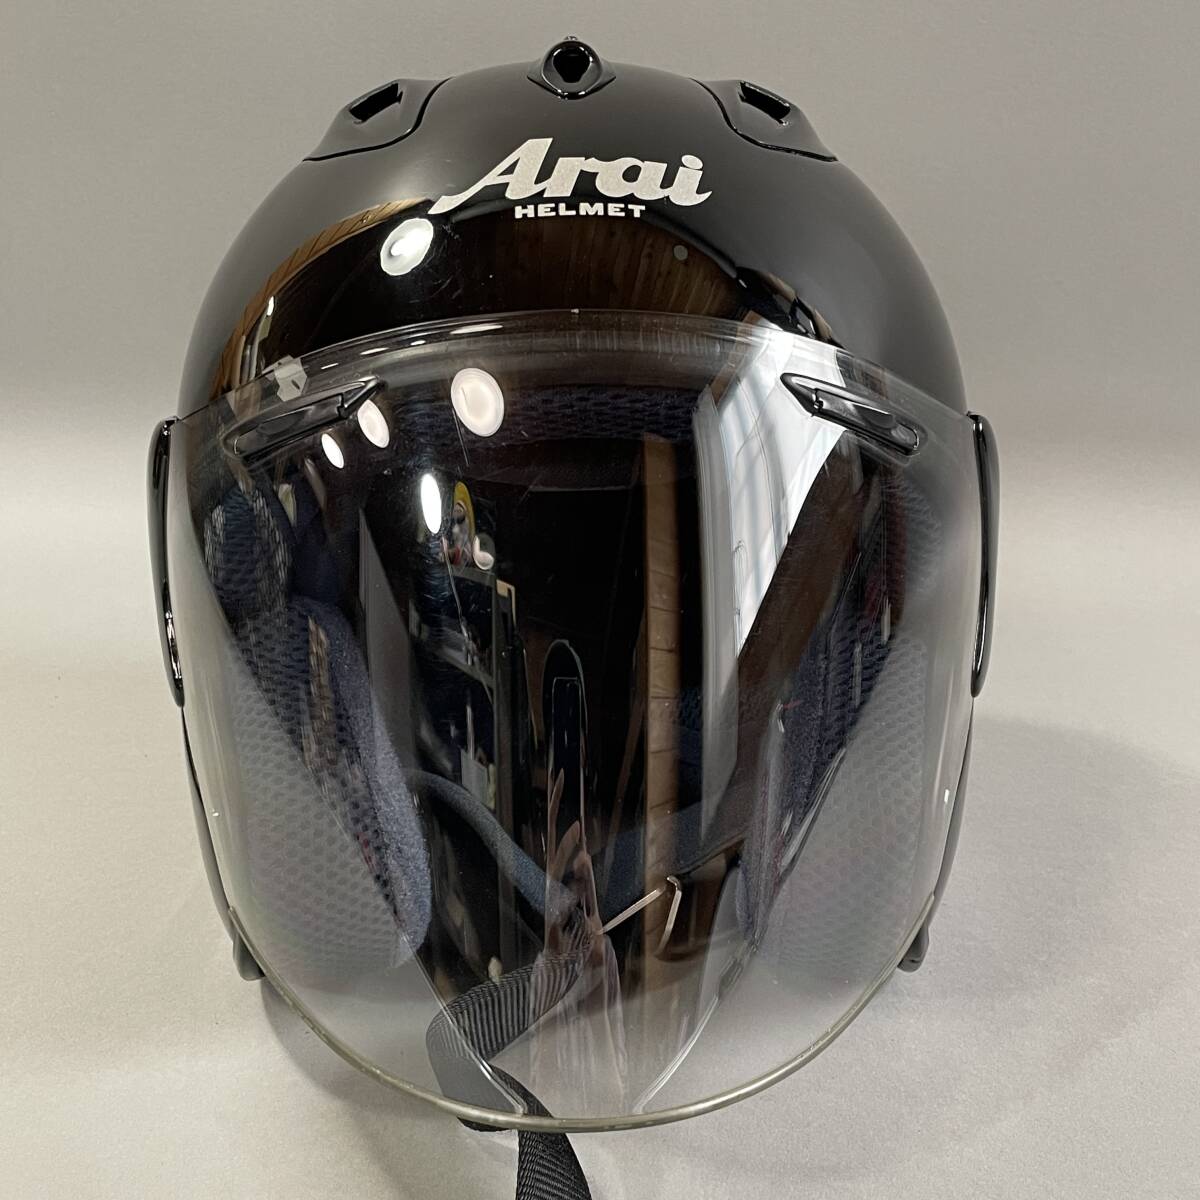 MS1129 Arai アライ SZ-Ram2 ジェットヘルメット 57-58cm Mサイズ ブラック 2001年製造 SNELL M2000規格 箱あり (検)バイク シールド 黒の画像2